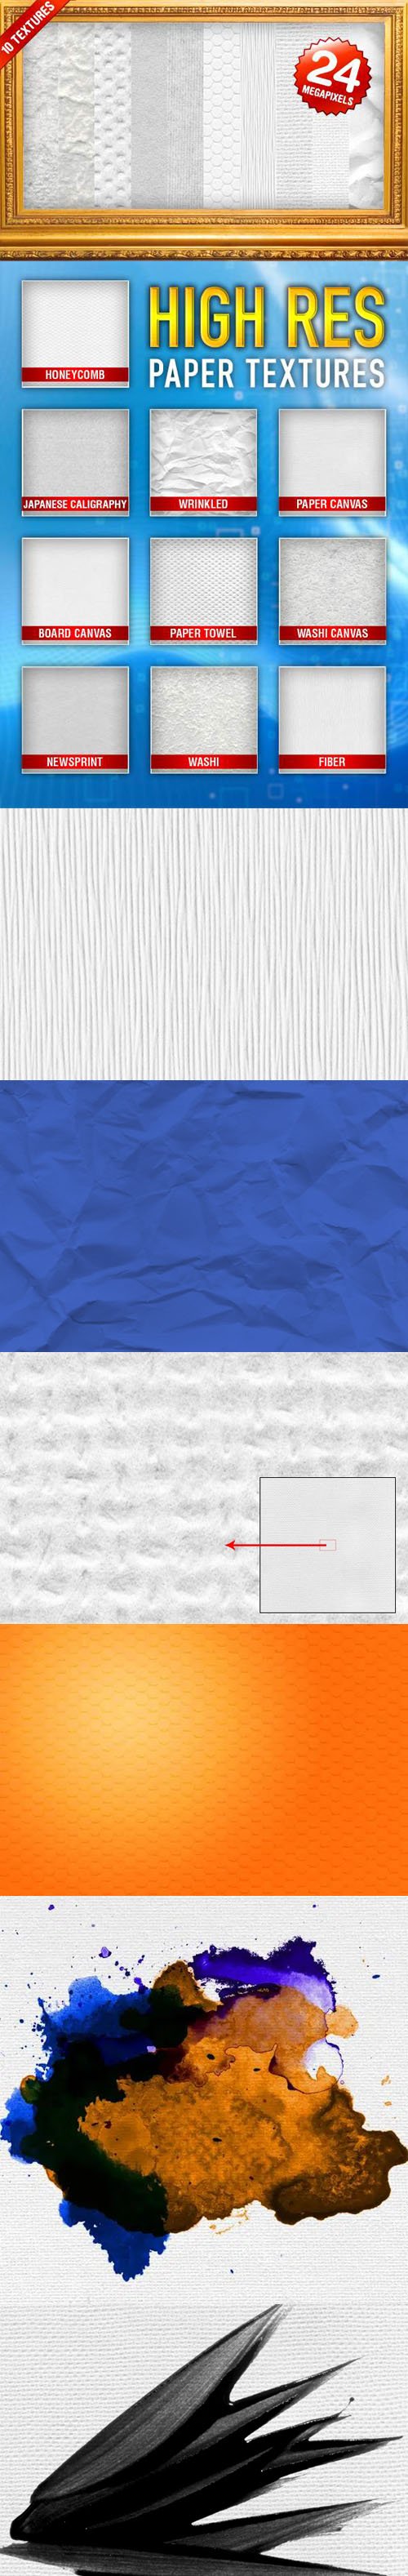 10 Hi-Res Paper Textures